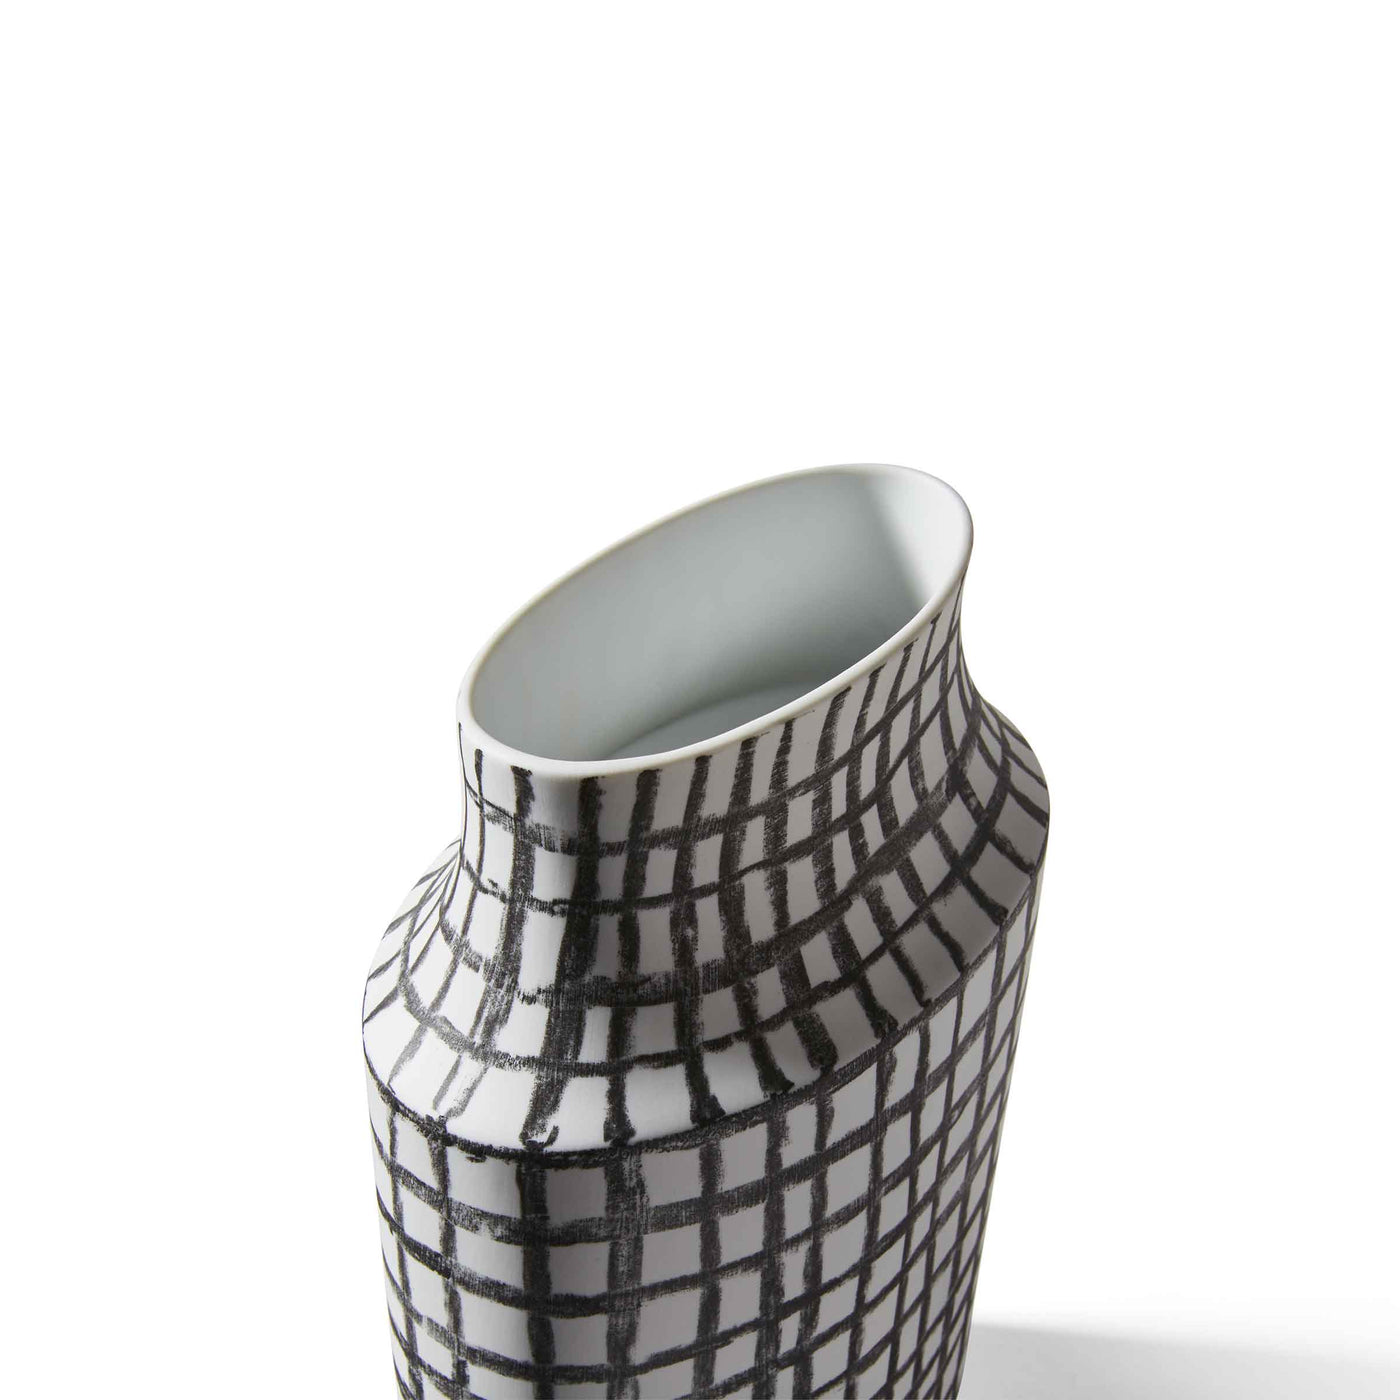 Porcelain Elliptical Vase POST SCRIPTUM, designed by Formafantasma for Cassina 02